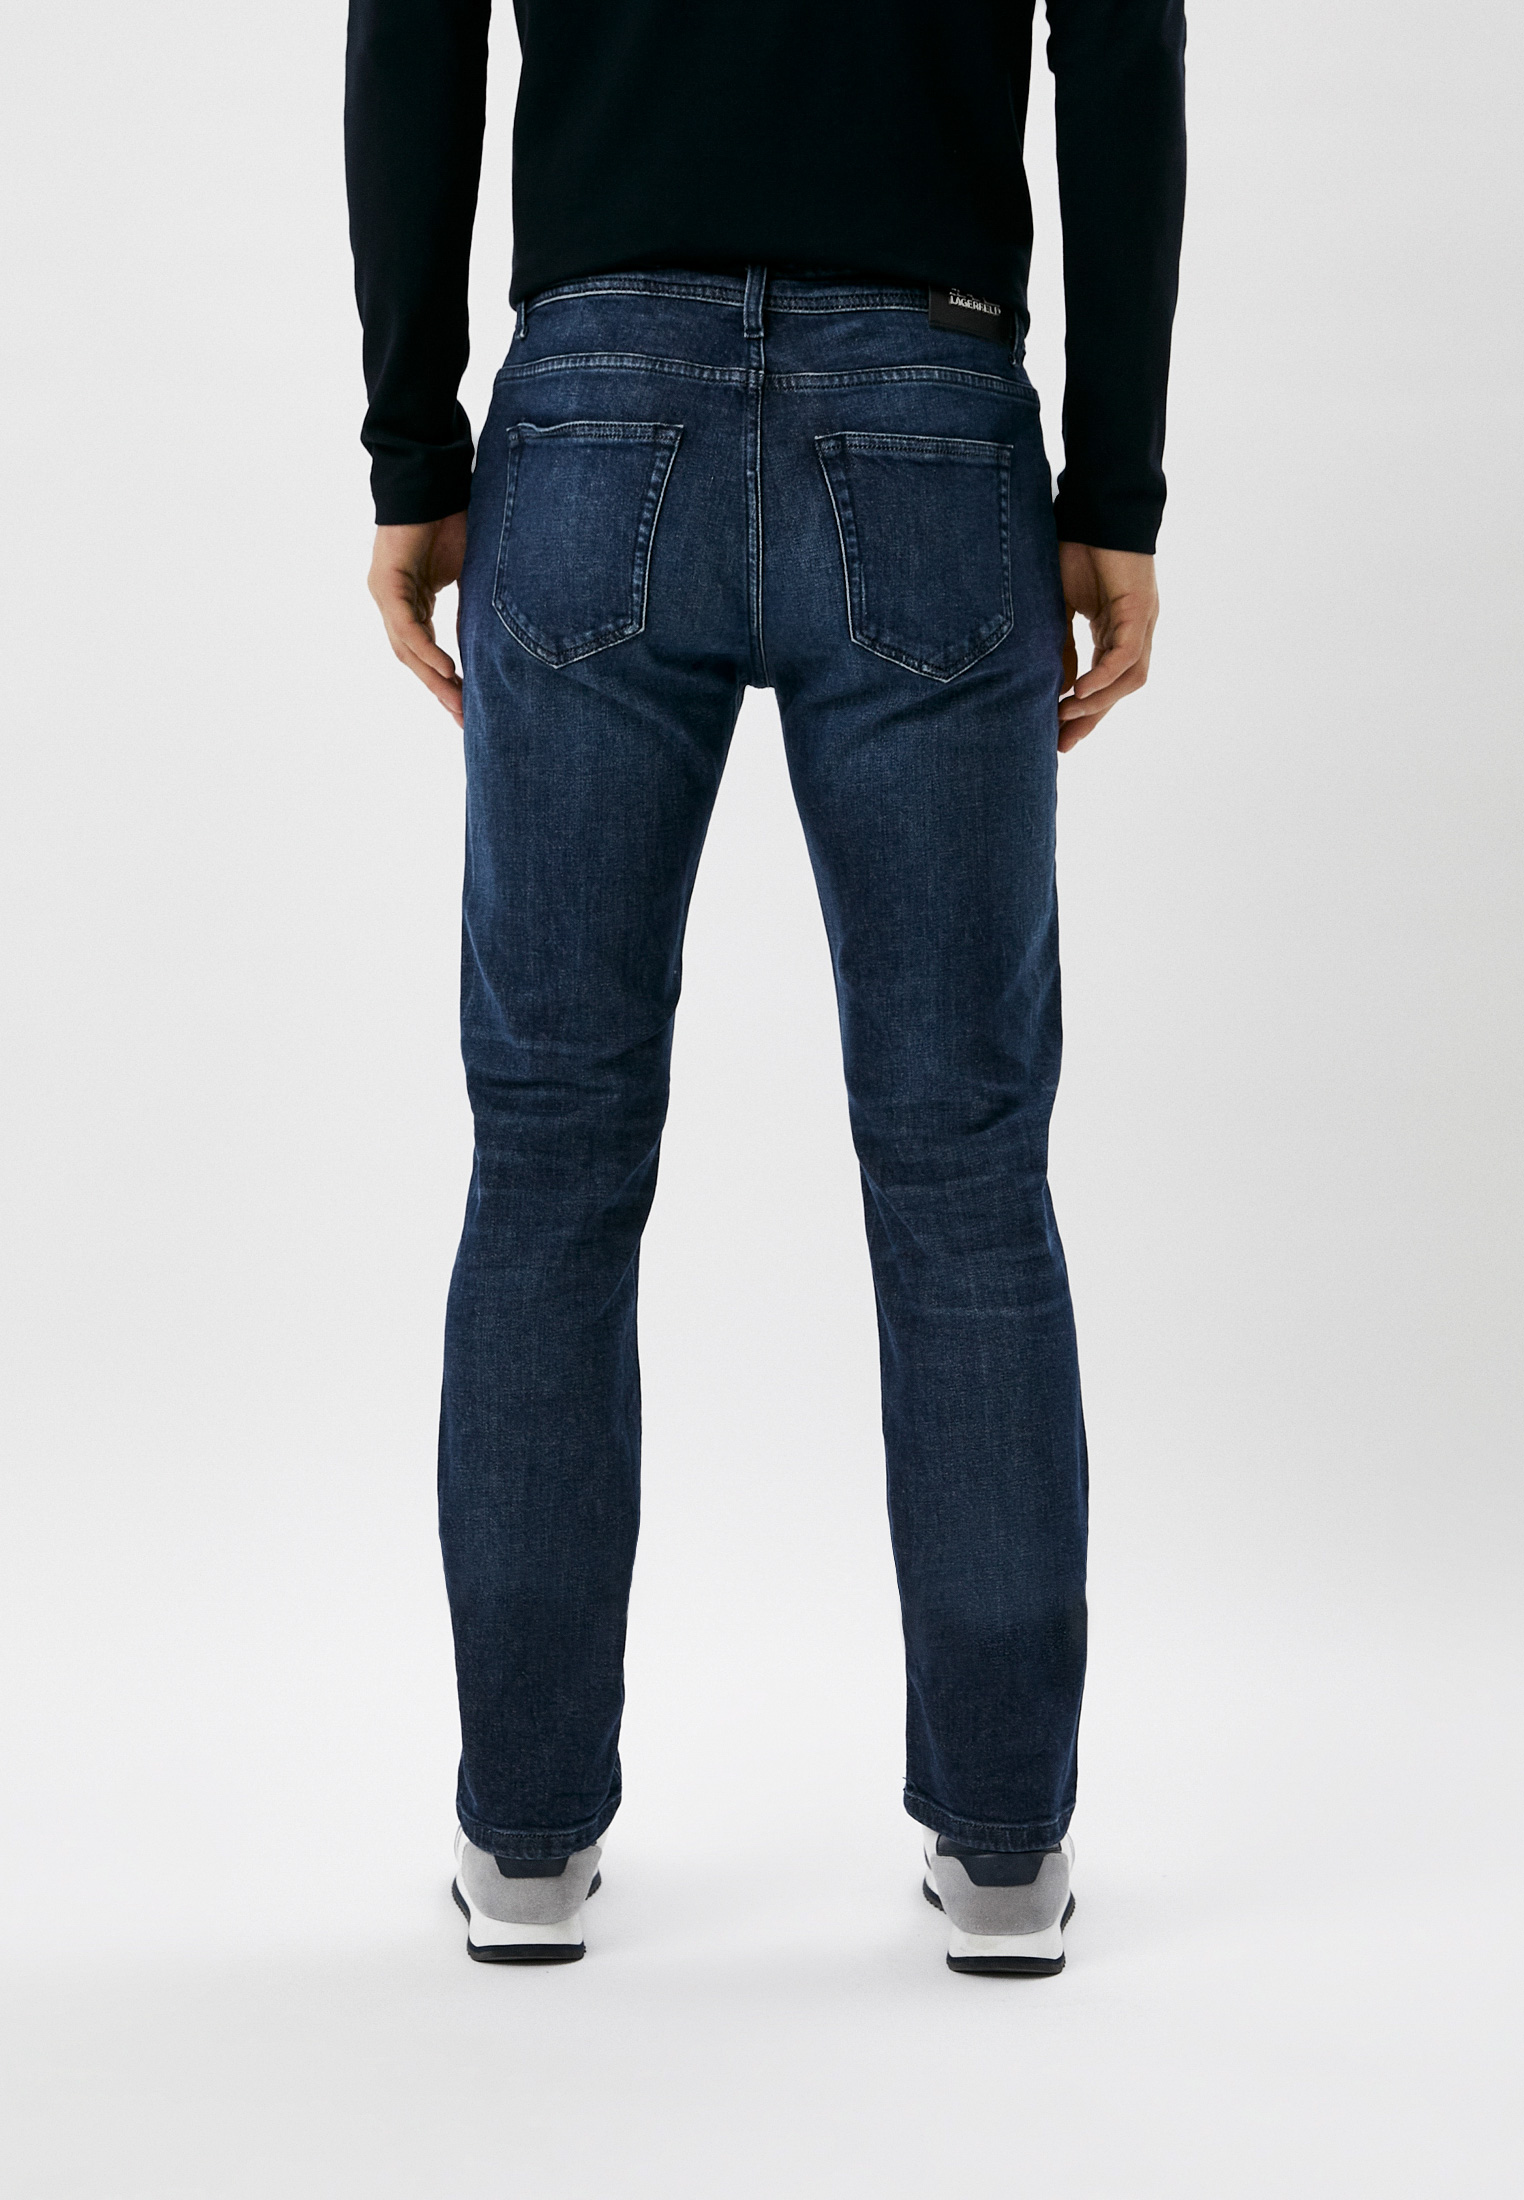 Мужские зауженные джинсы Karl Lagerfeld (Карл Лагерфельд) 265840-500899: изображение 3